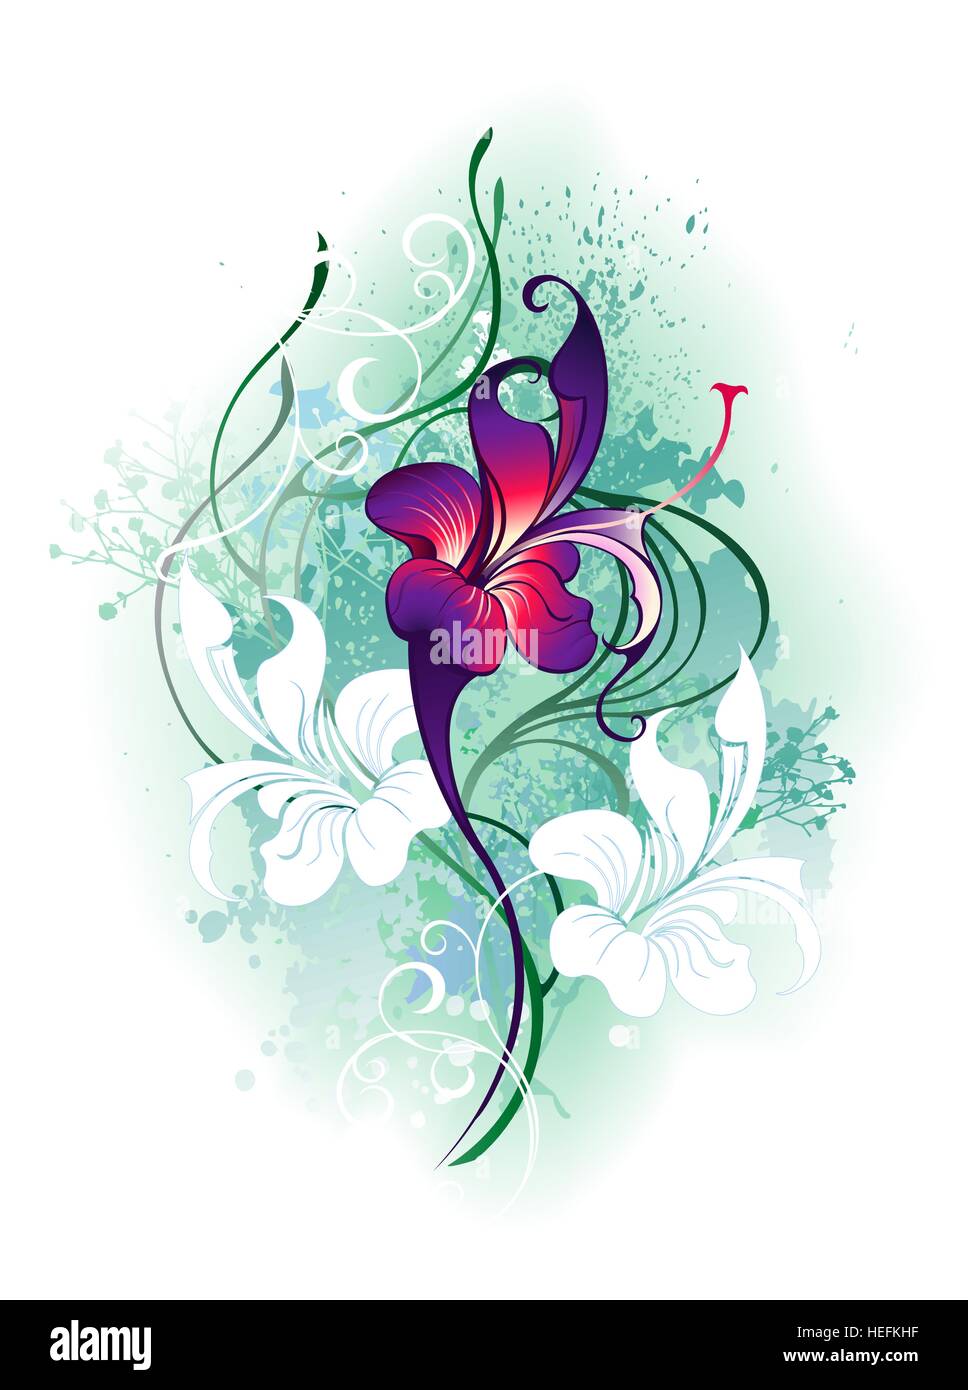 künstlerisch bemalt, schönen lila Blüten mit grünen Pflanzen auf einem weißen Hintergrund. Stock Vektor